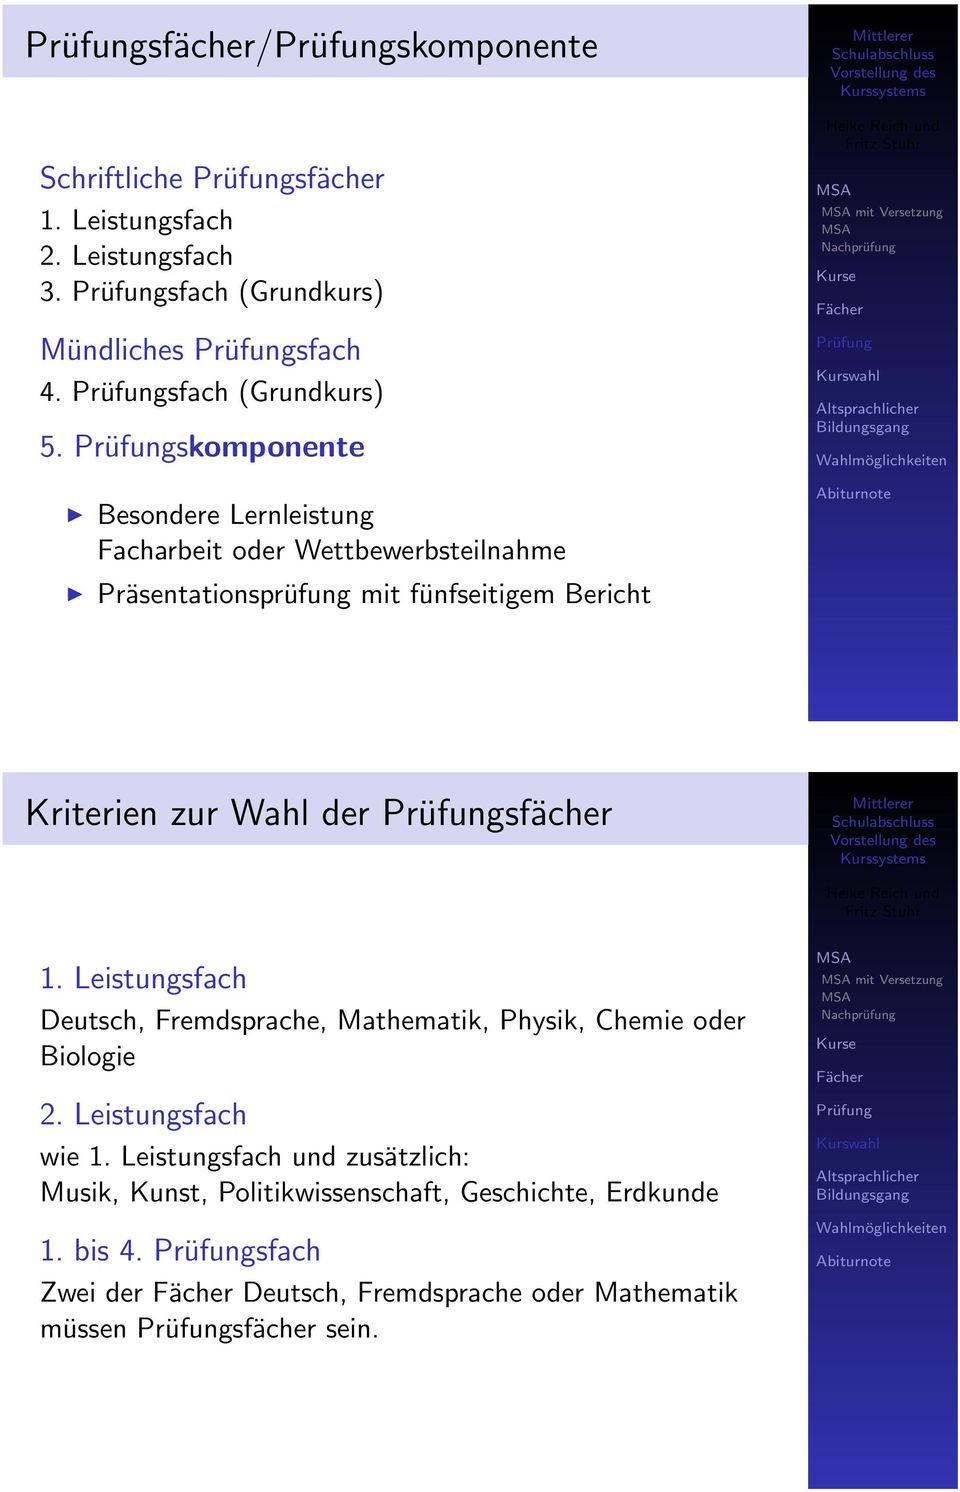 Wahl der sfächer 1. Leistungsfach Deutsch, Fremdsprache, Mathematik, Physik, Chemie Biologie 2. Leistungsfach wie 1.